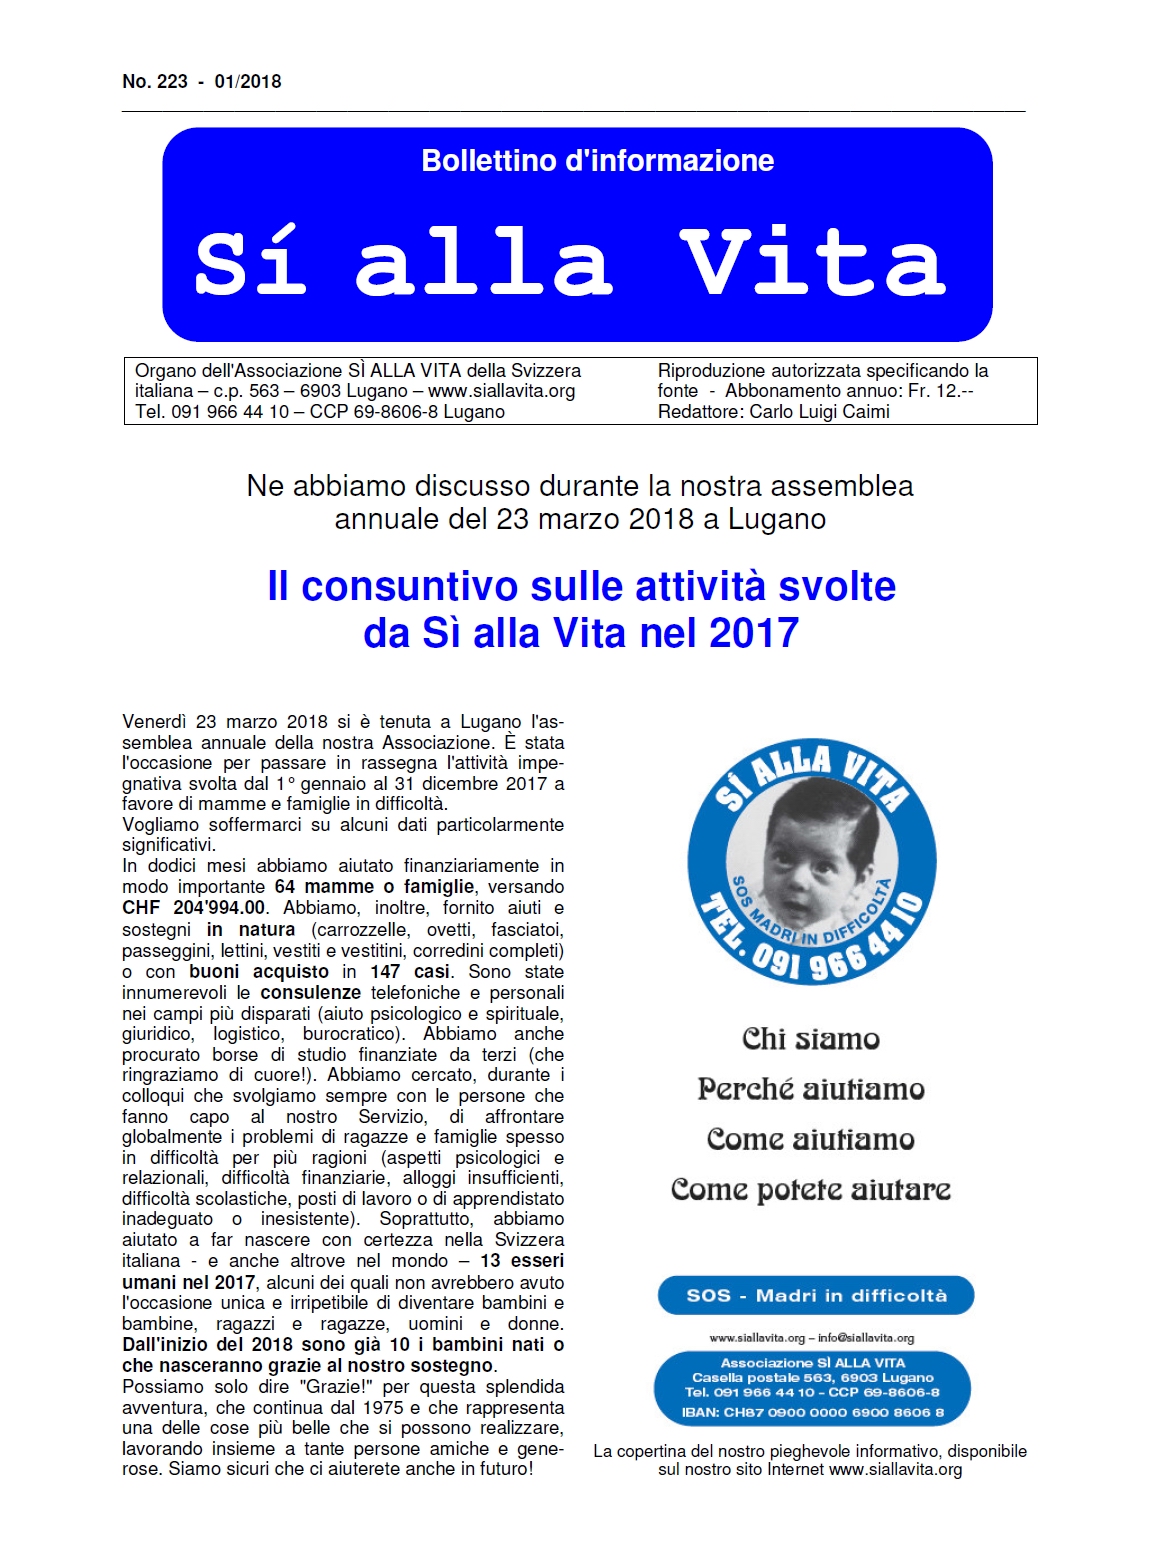 Bollettino_Si_alla_Vita_n.223